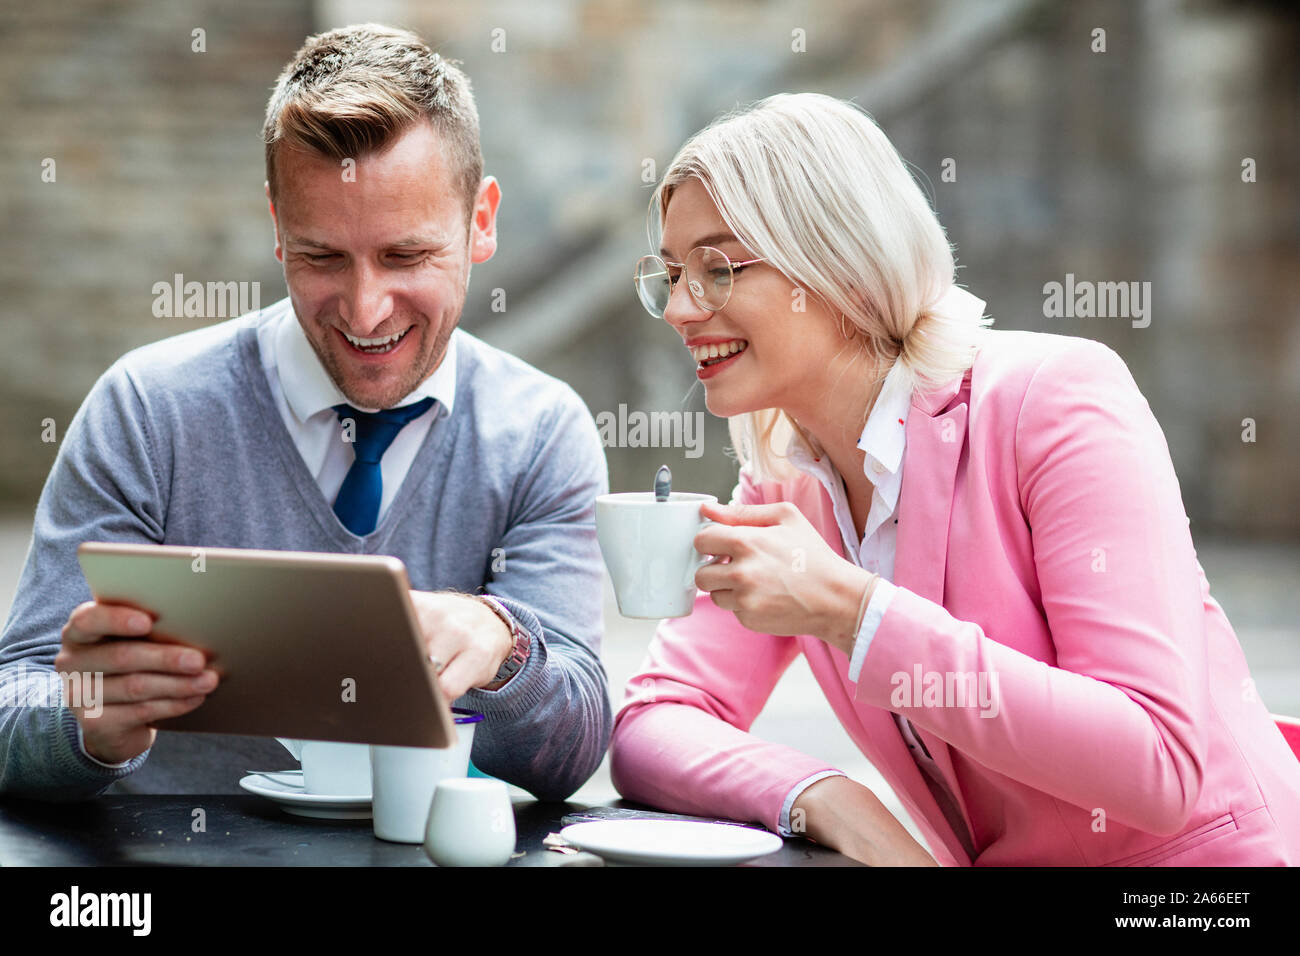 Deux entrepreneurs de s'asseoir et de rire de quelque chose sur une tablette numérique. La businesswoman holding est une boisson chaude, tandis que l'homme est titulaire d'e Banque D'Images